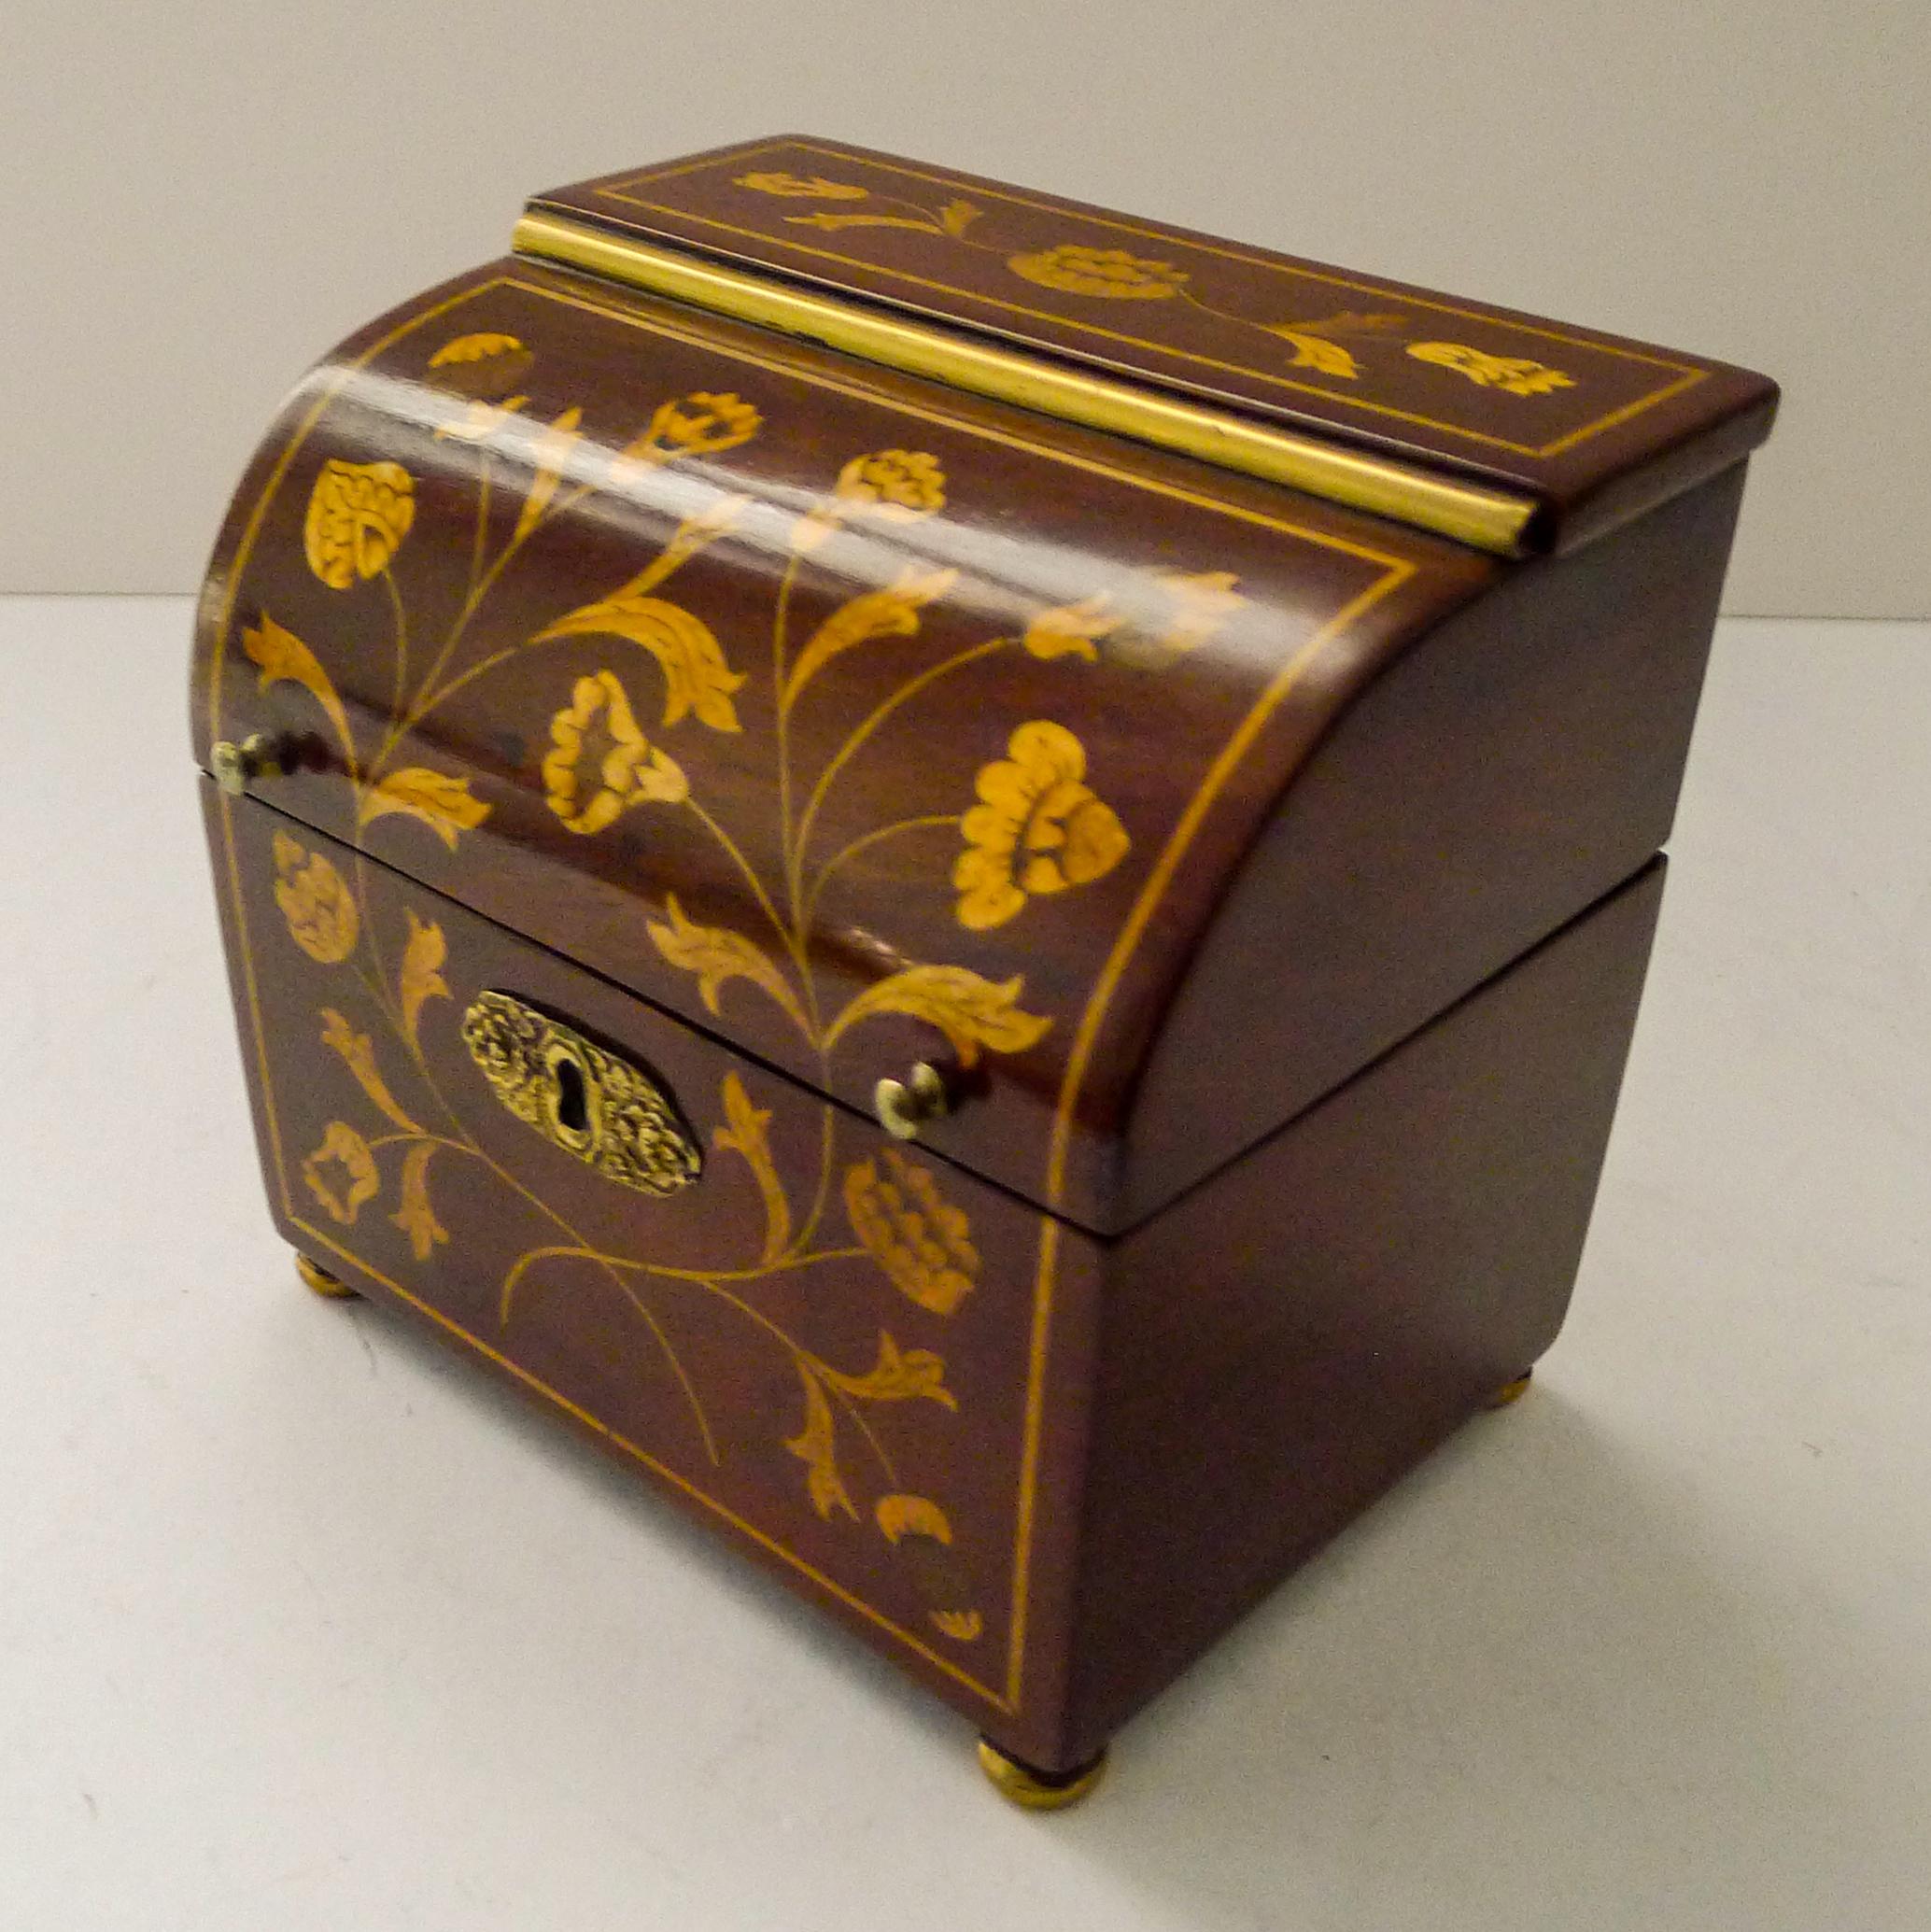 Cette magnifique boîte à thé du début du XIXe siècle a été fabriquée pour imiter les grandes boîtes à décanter de forme et d'aspect similaires fabriquées à cette époque.

Fabriqué en acajou, le coffret est magnifiquement décoré d'une superbe